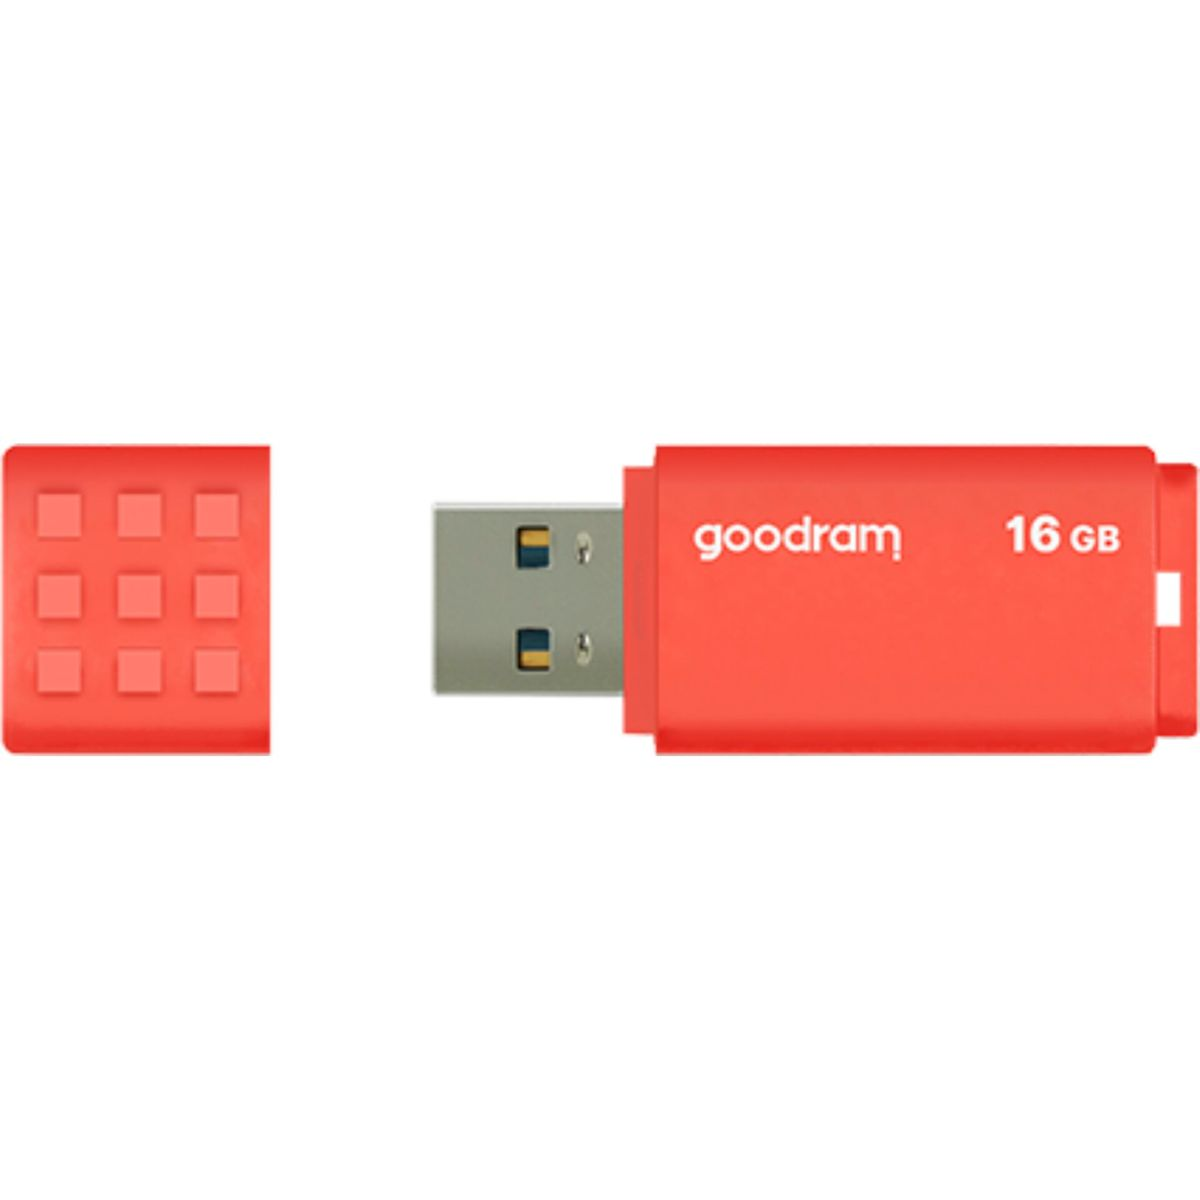 GOODRAM UME3 USB 3.0 Orange Stick 16GB 16 (orange, GB) USB